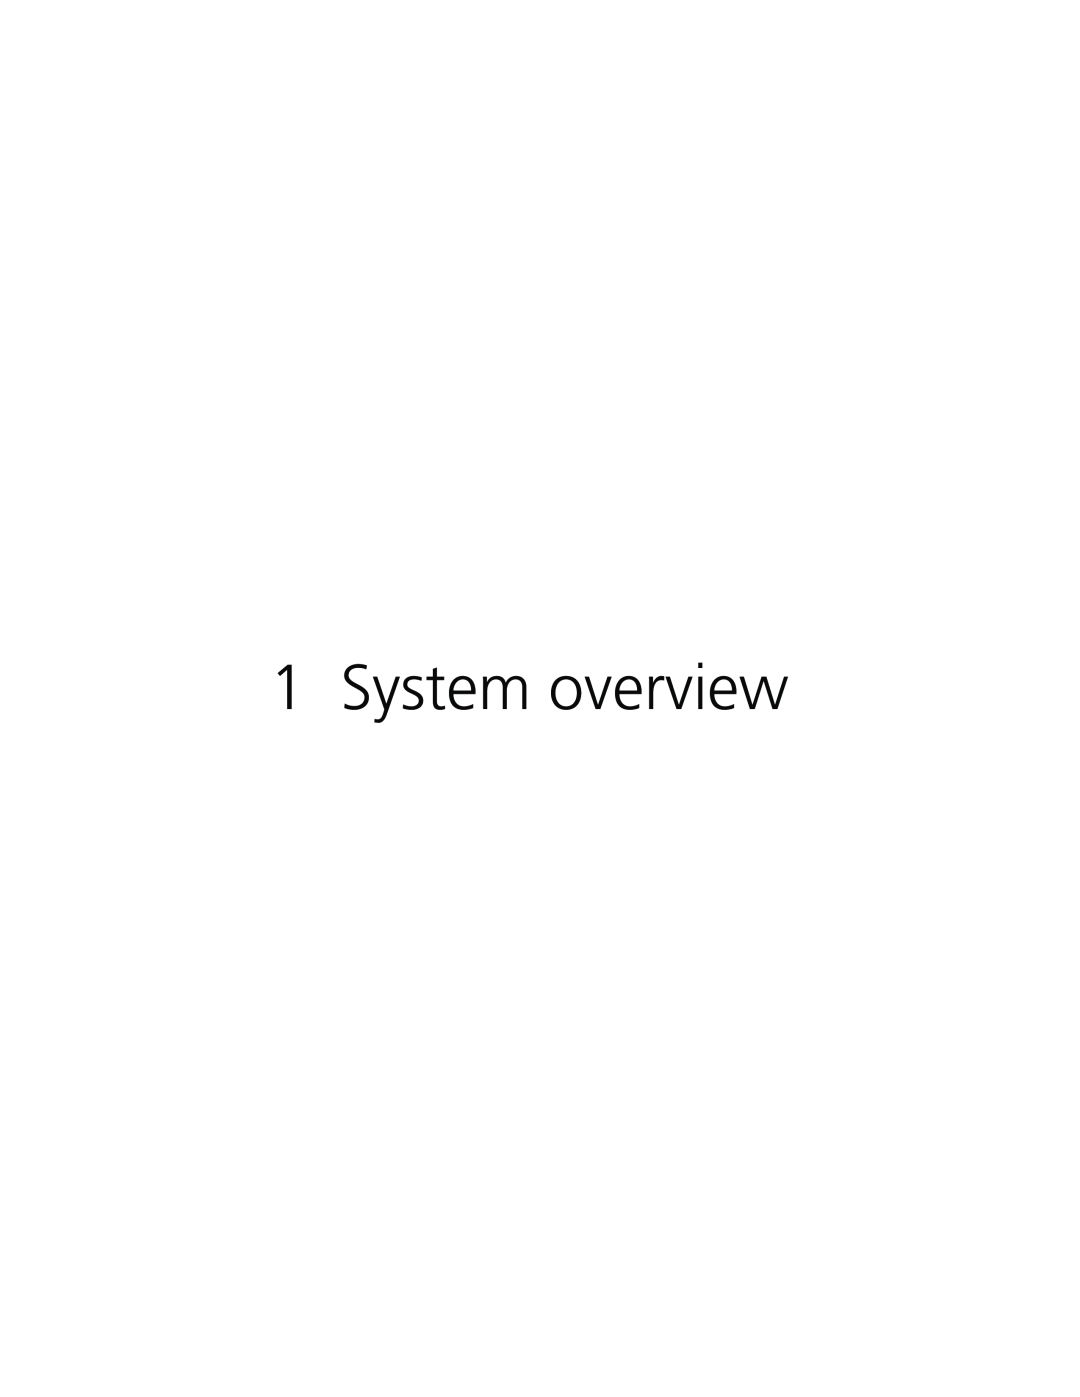 Acer Altos G610 manual System overview 